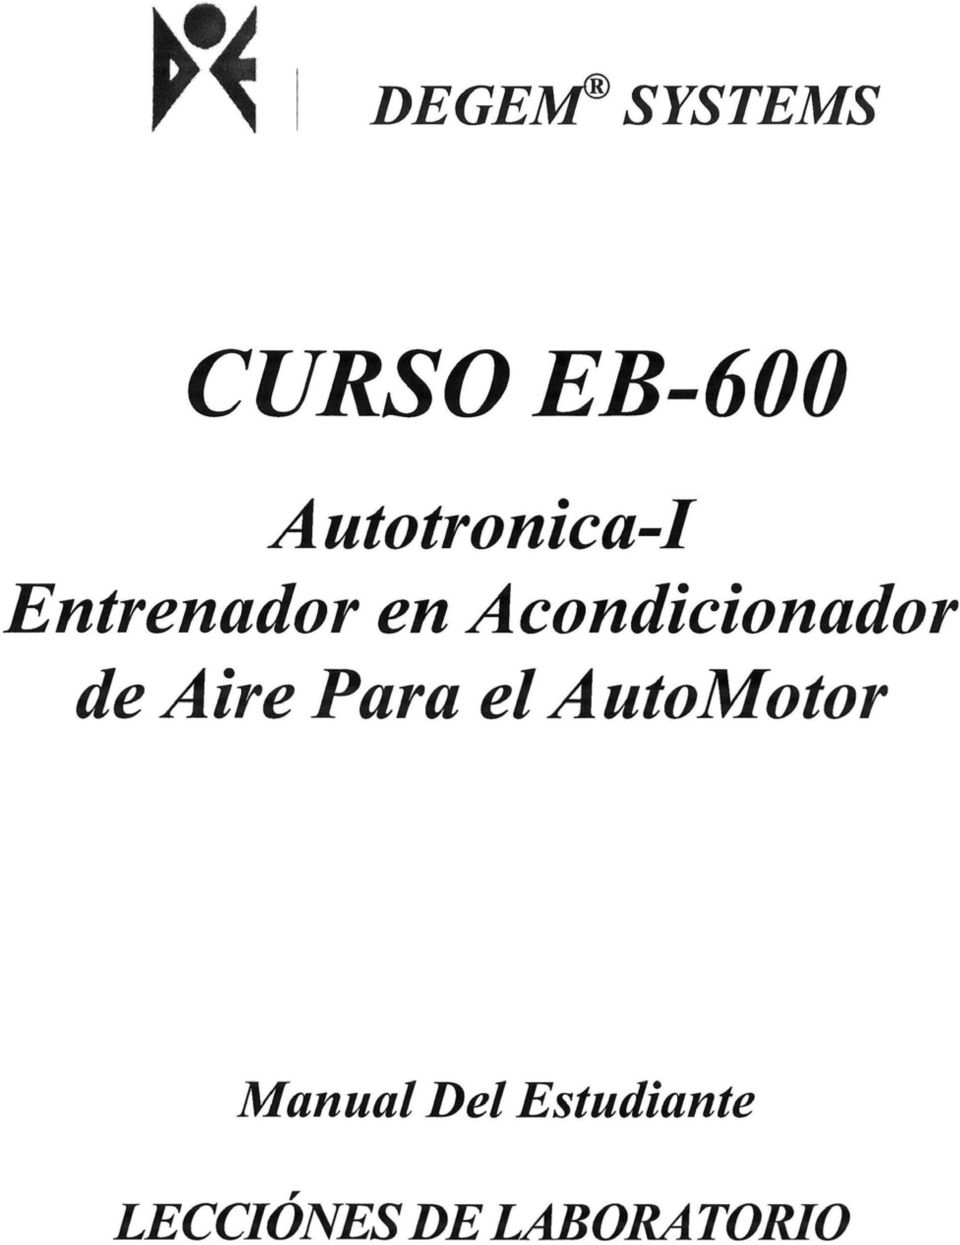 Aire Para el AutoMotor Manual